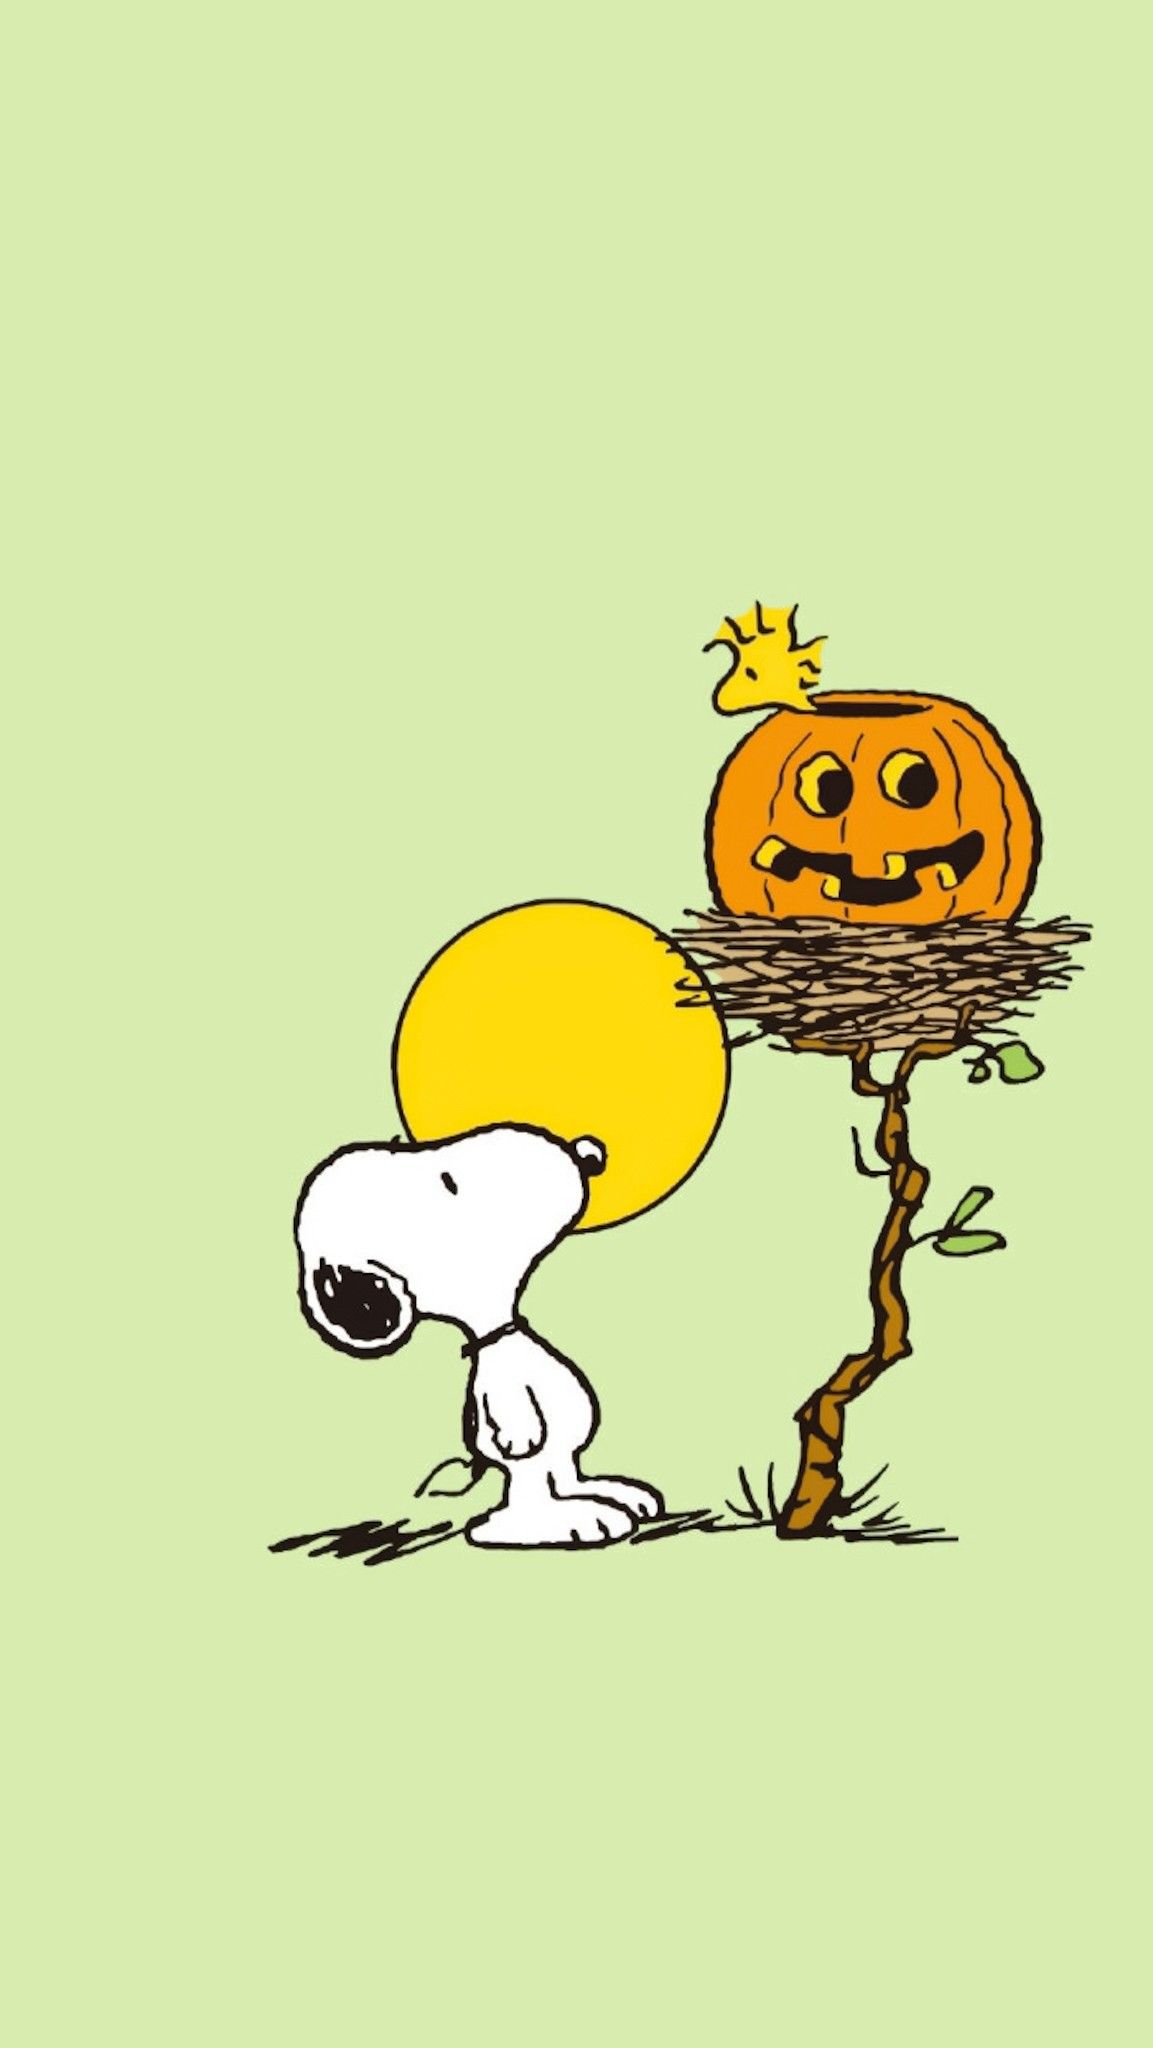 New Smartphone Wallpaper: Halloween Snoopy Wallpaper